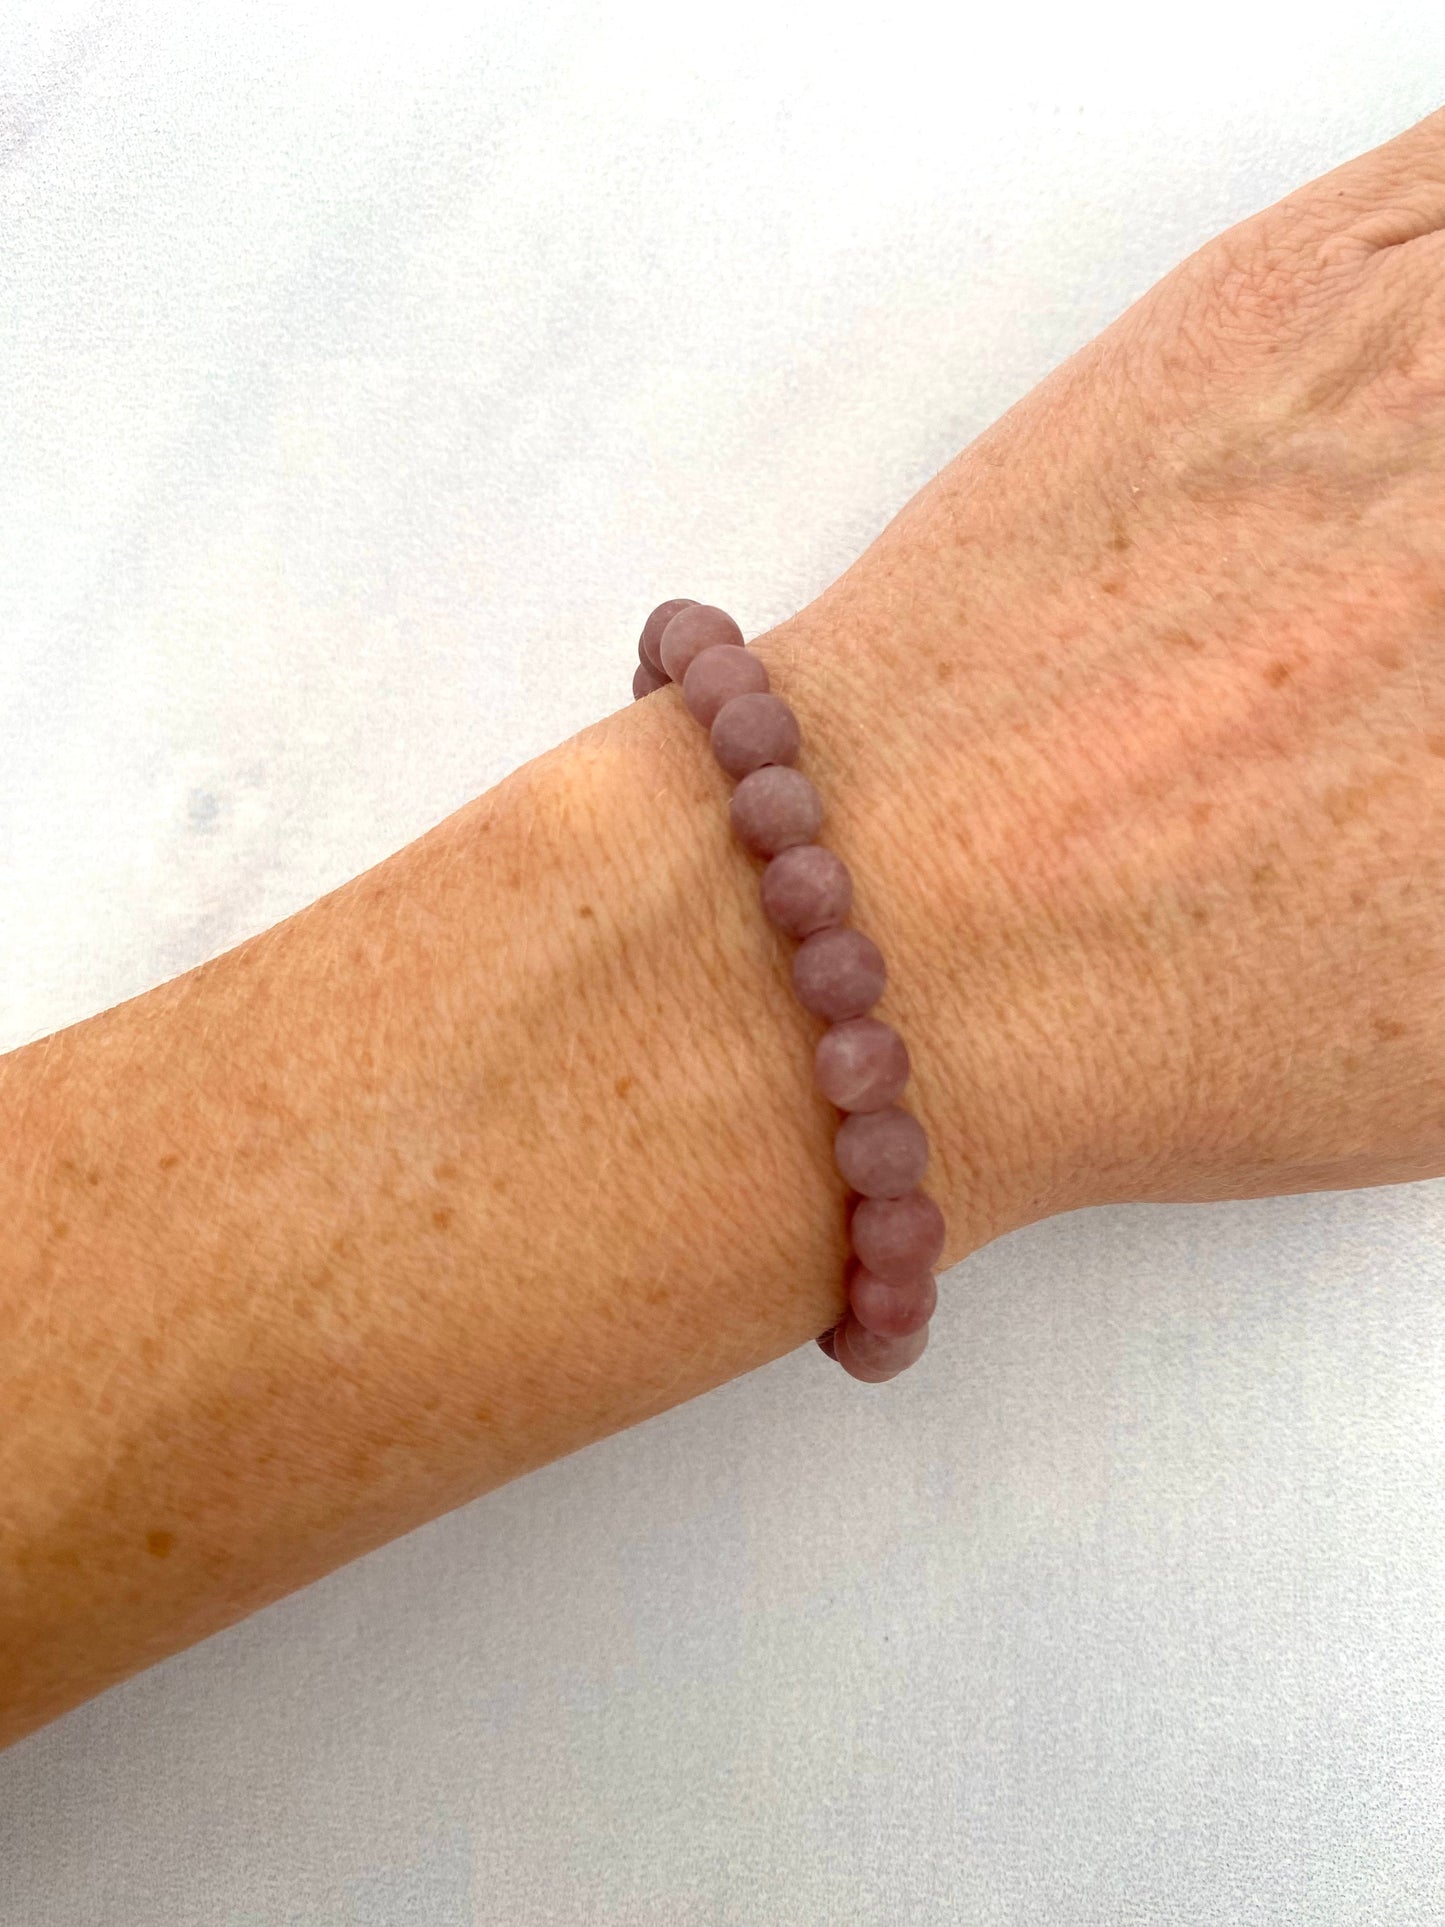 Arabic 'hope’ bracelet